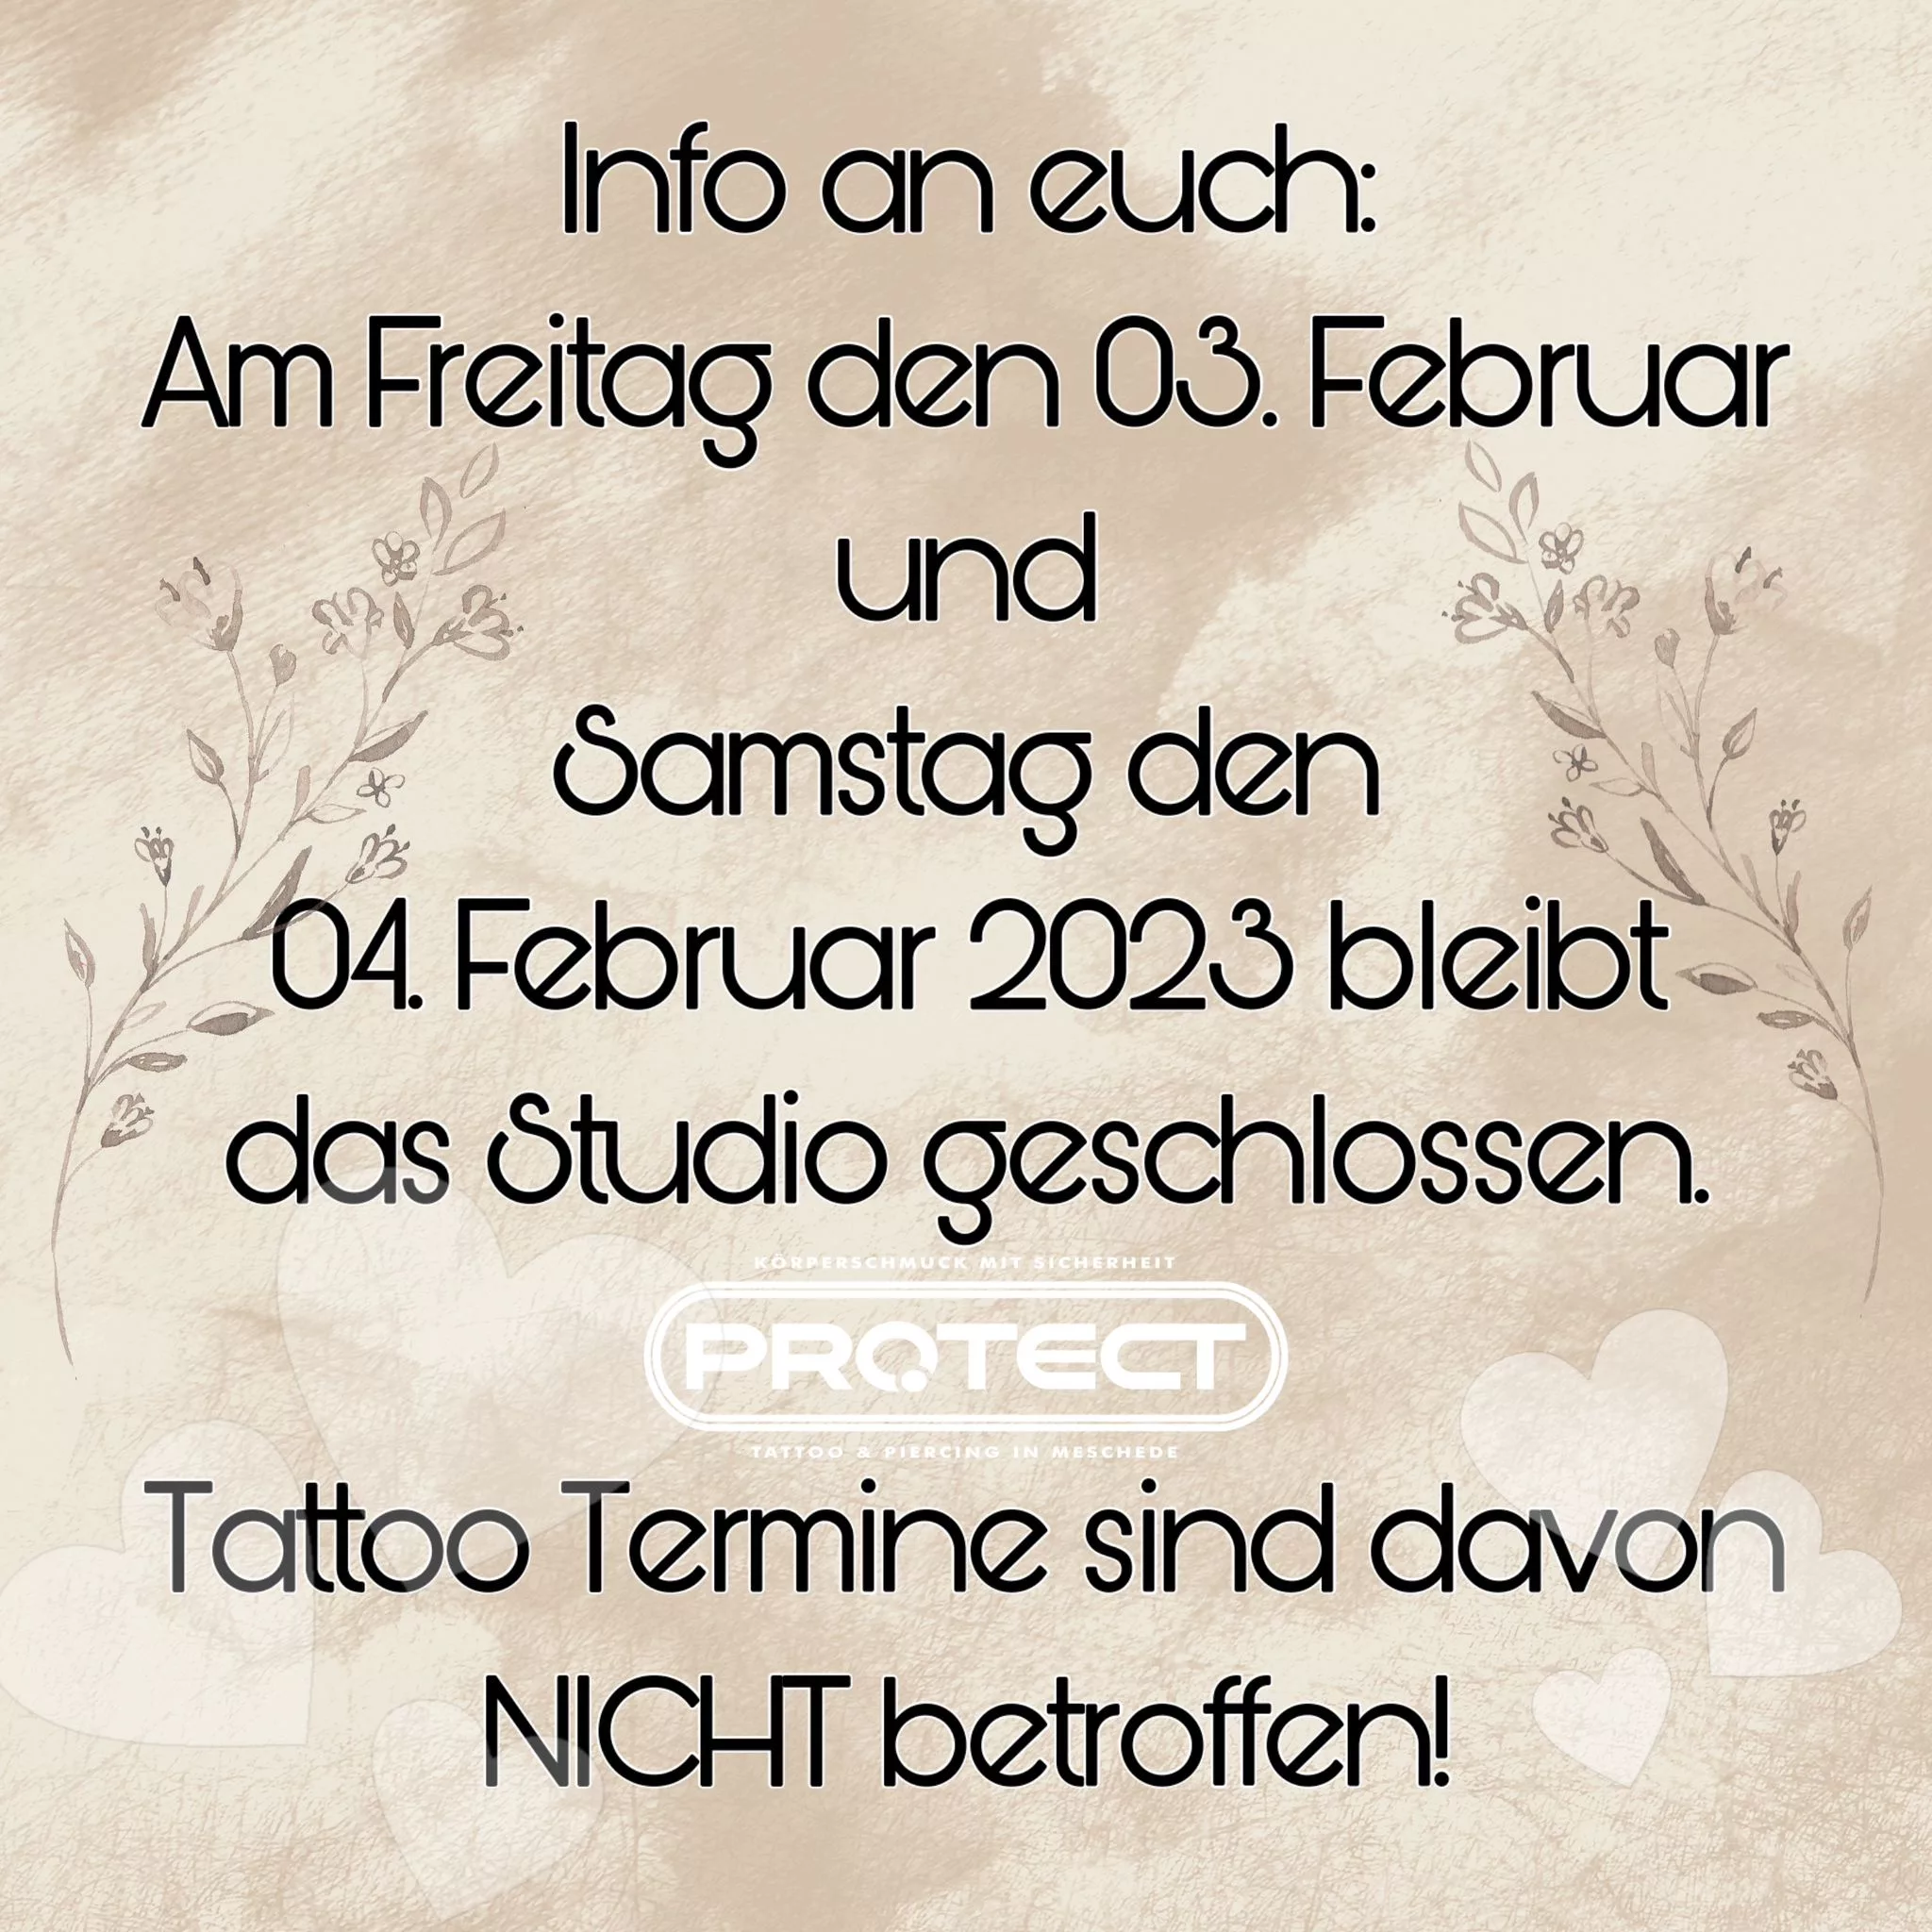 Am Freitag den 03. Februar und Samstag den 04. Februar 2023 bleibt das Studio geschlossen. Tattoo Termine sind daon NICHT betroffen.